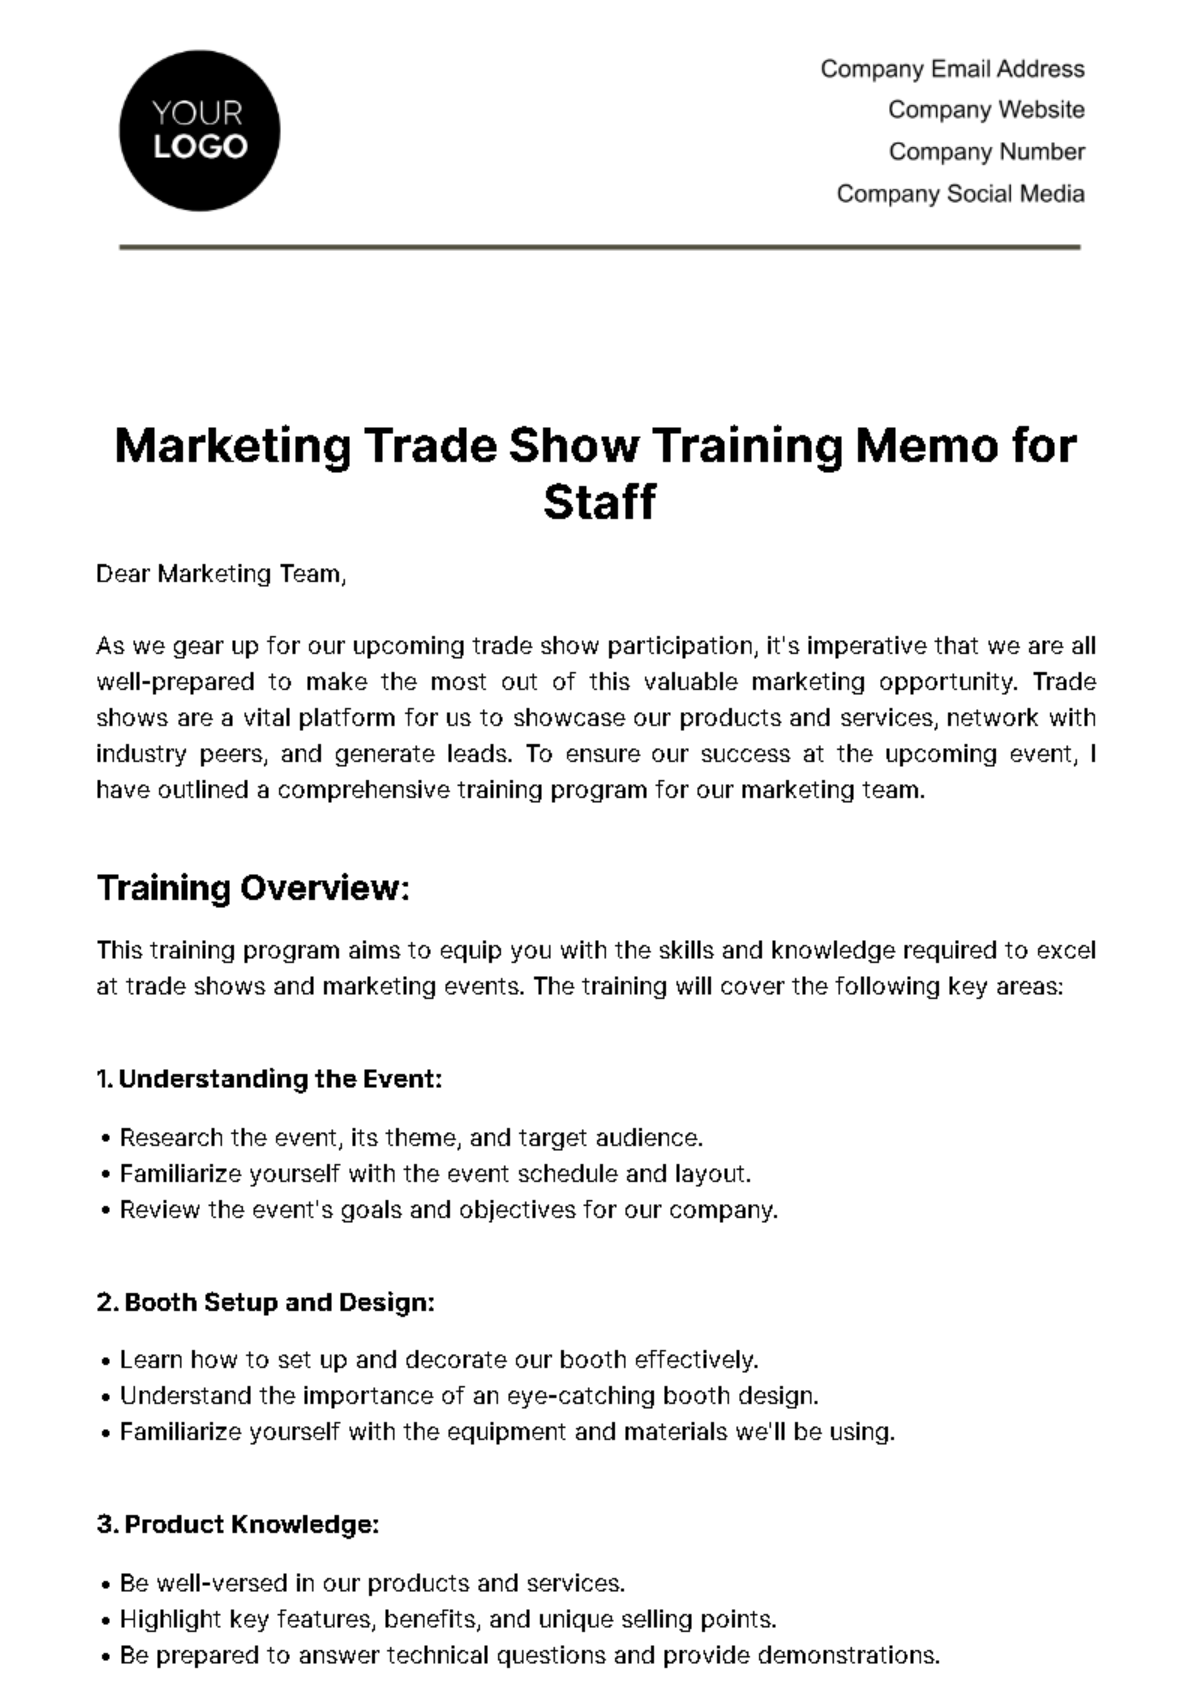 Marketing Trade Show Training Memo for Staff Template